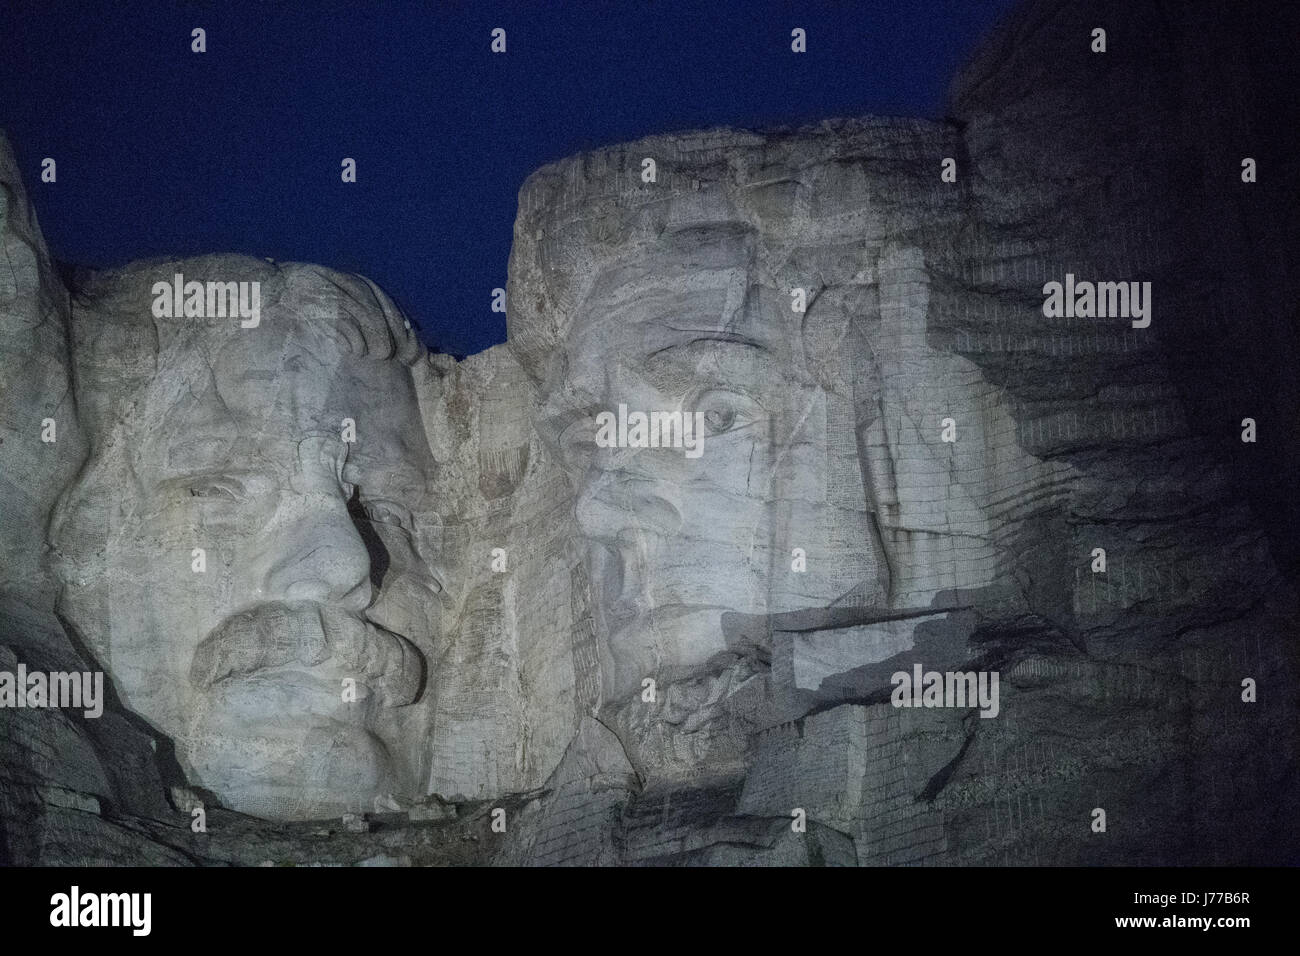 Nahaufnahme des Präsidenten Teddy Roosevelt und Abraham Lincoln Skulpturen am Mount Rushmore National Memorial in der Nacht in den Black Hills National Forest 18. Mai 2017 in Keystone, South Dakota. Stockfoto